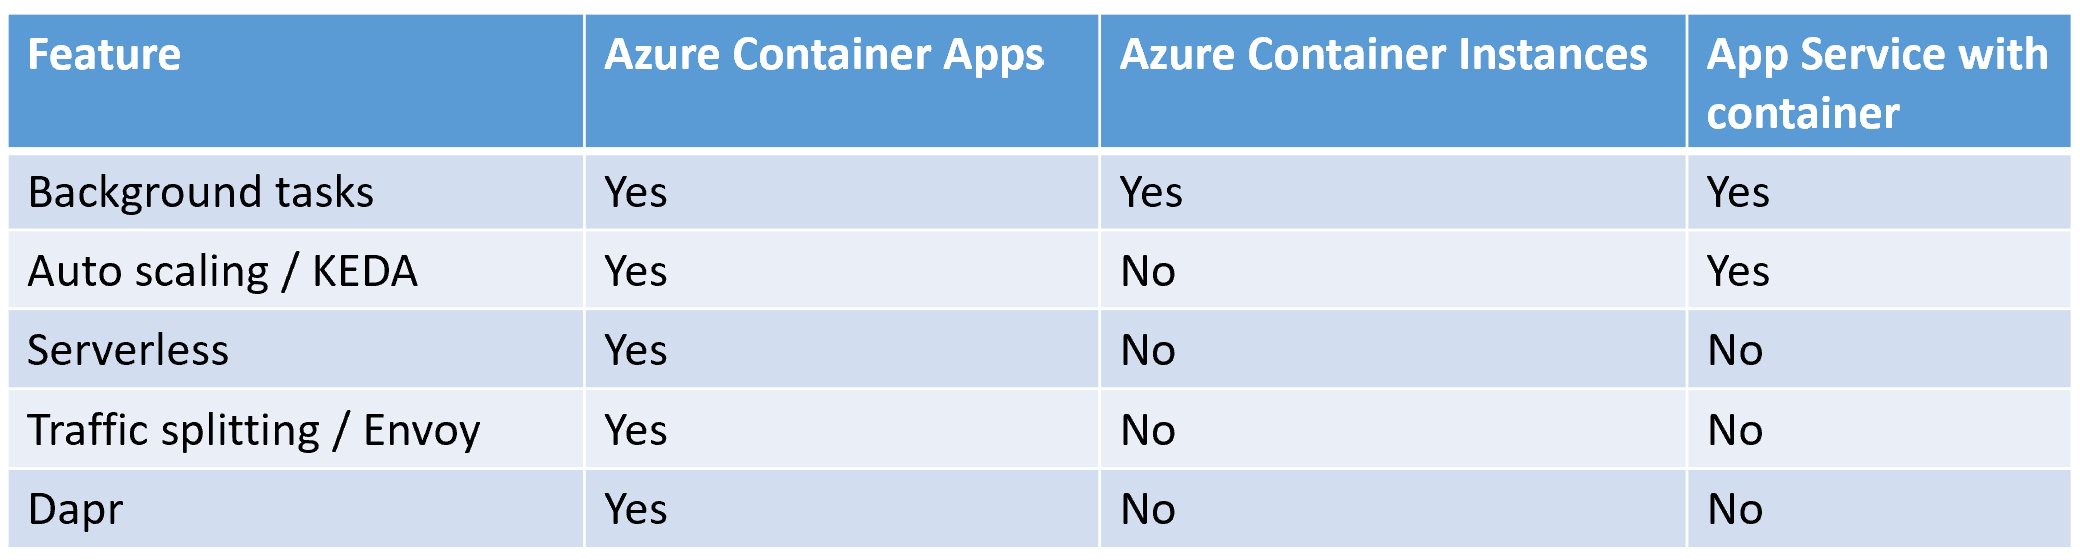 Azure Container App Comparison